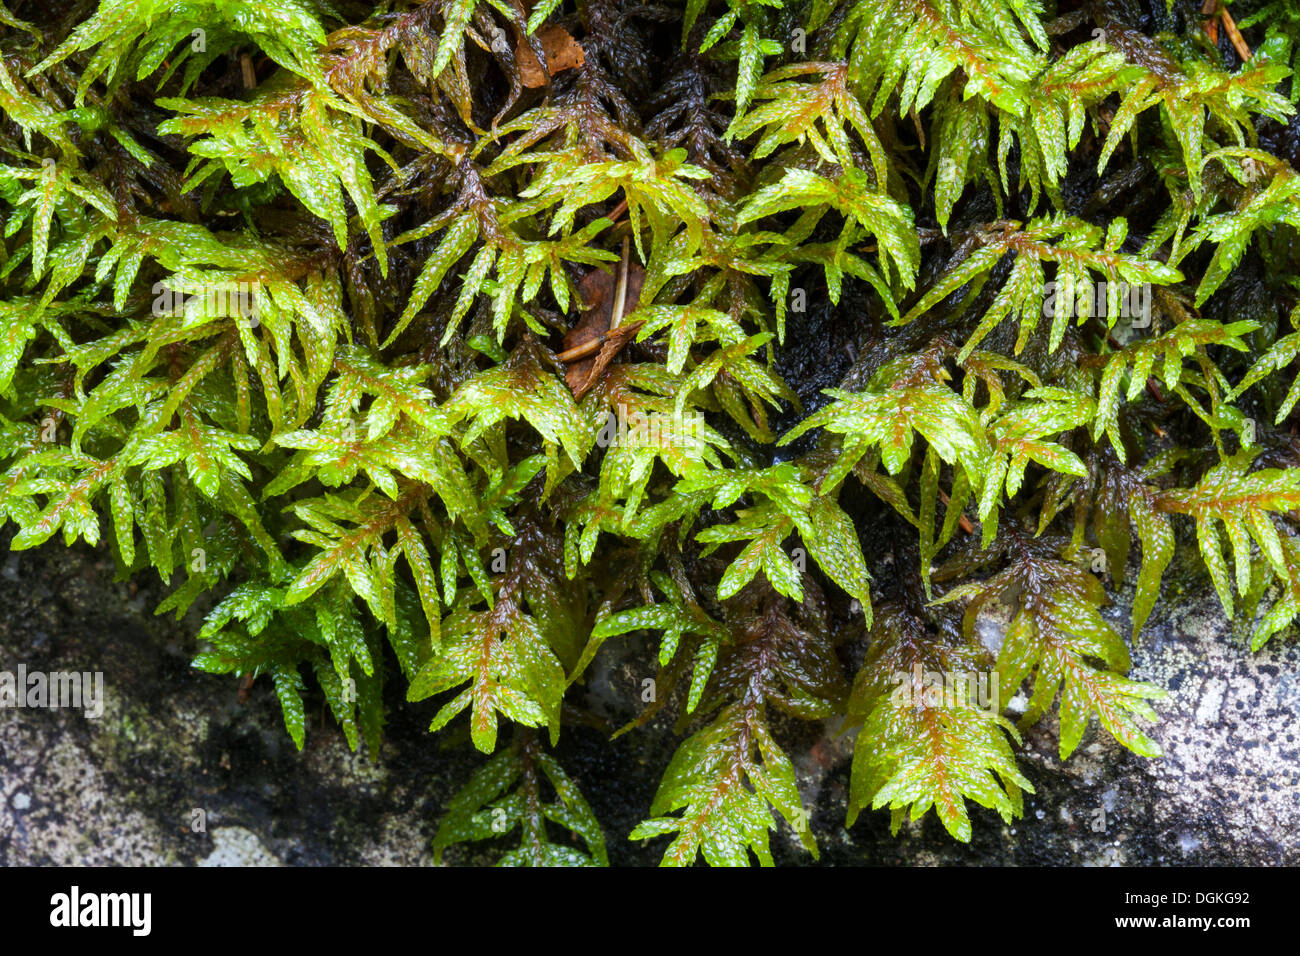 Pleurozium moss (Pleurozium schreberi) growth Stock Photo